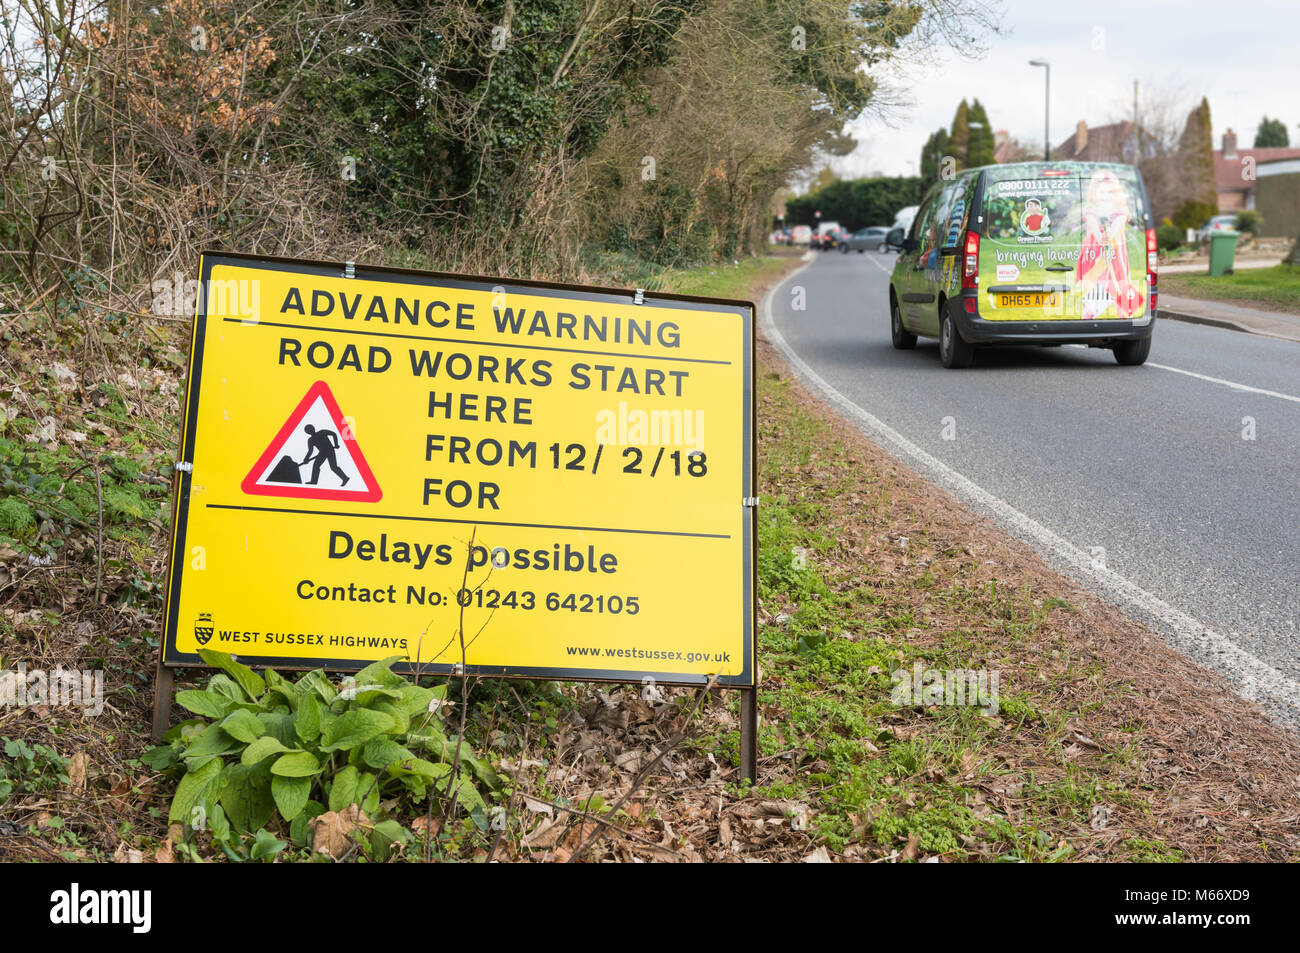 L'avance jaune signe routière d'avertir en cas de retard en raison de travaux routiers à partir de Angmering, West Sussex, Angleterre, Royaume-Uni. Banque D'Images